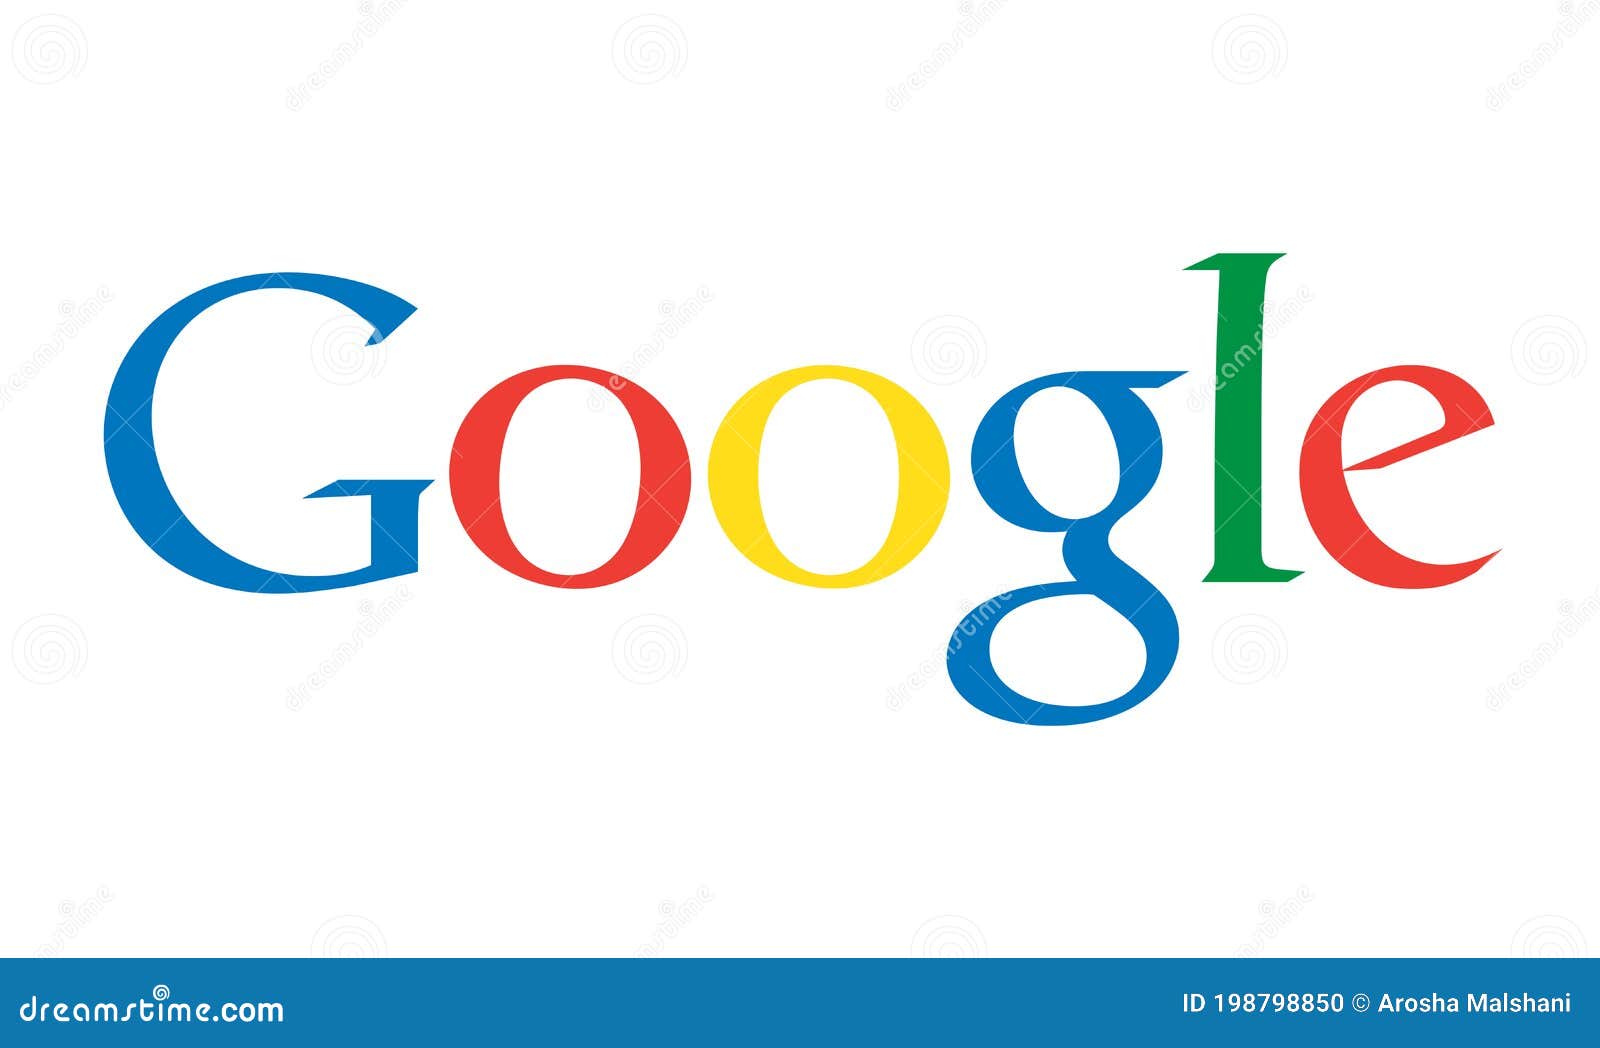 Biểu tượng Google trên nền trắng là một trong những biểu tượng quan trọng của thế giới kỹ thuật số. Với thiết kế đơn giản nhưng cực kỳ hiệu quả, biểu tượng này mang lại sự thân thiện và gần gũi cho người dùng trên toàn thế giới. Xem và khám phá sự đẹp đẽ đằm thắm của biểu tượng này, bạn sẽ không thể rời mắt!